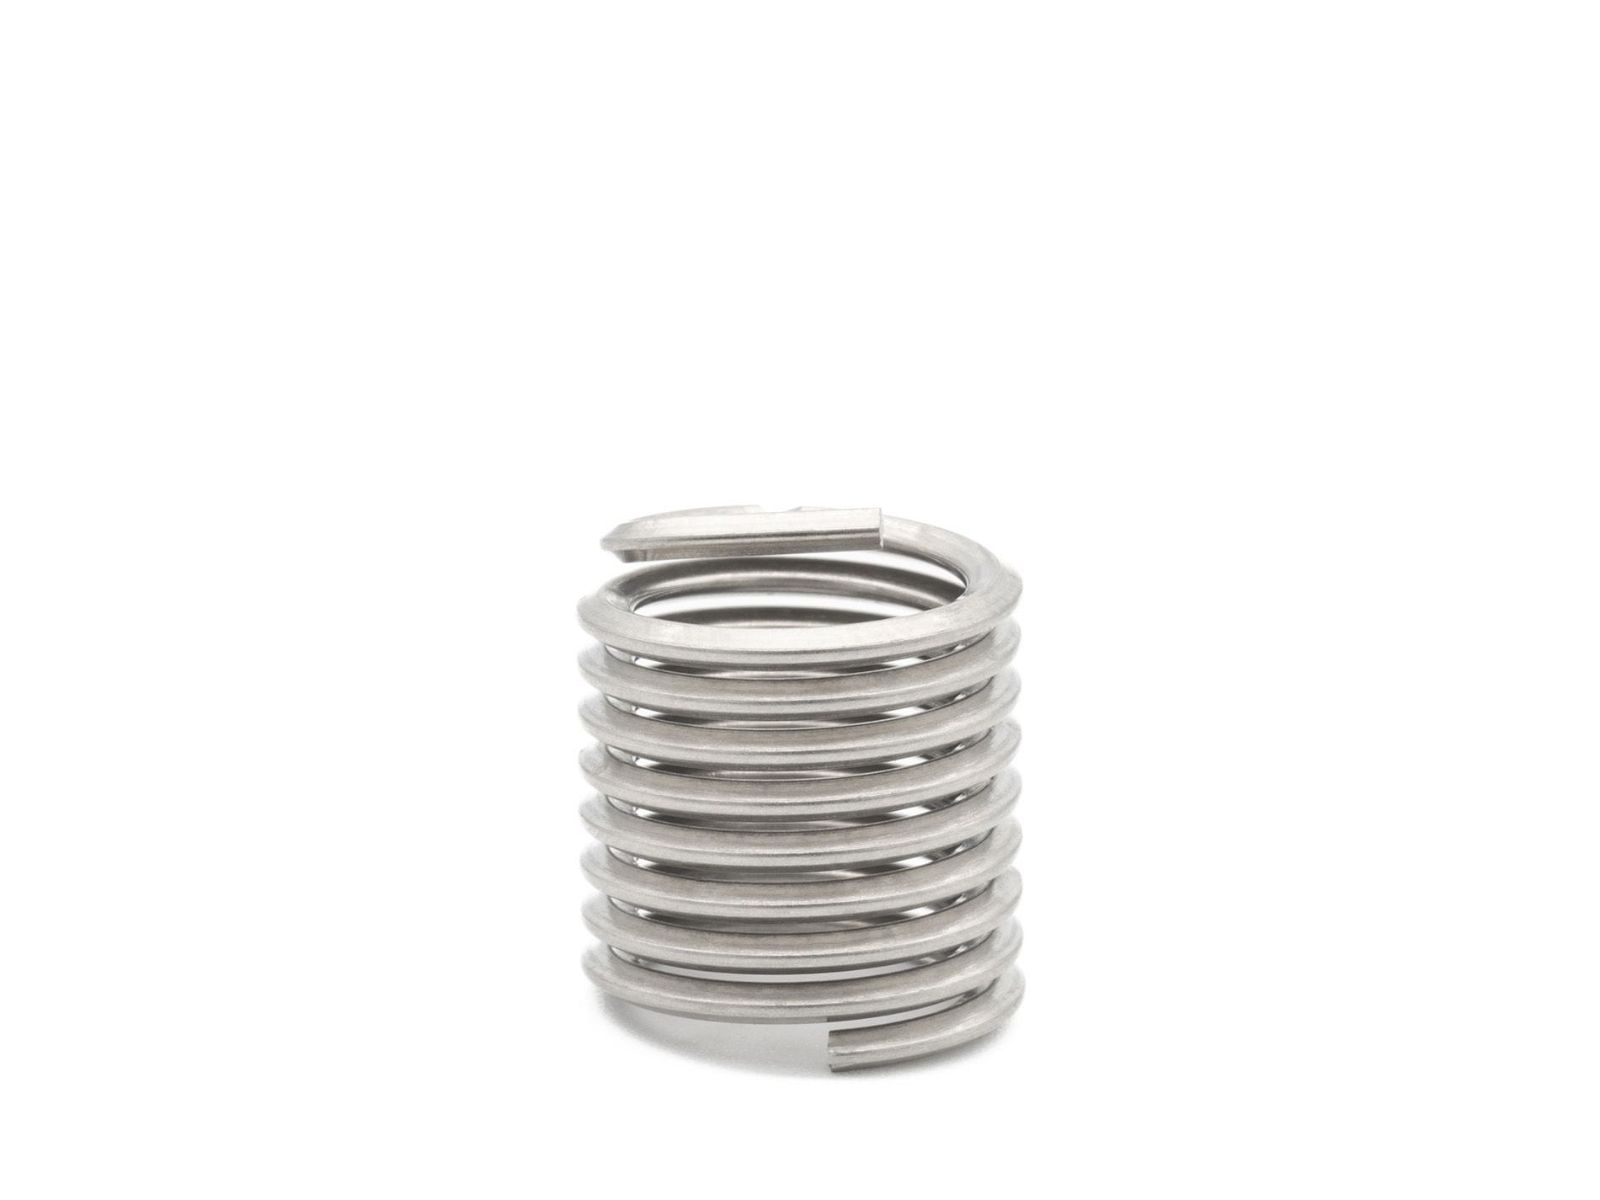 BaerCoil Wire Thread Inserts UNF No. 10 x 32 - 1.5 D (7.24 mm) 10 pcs.